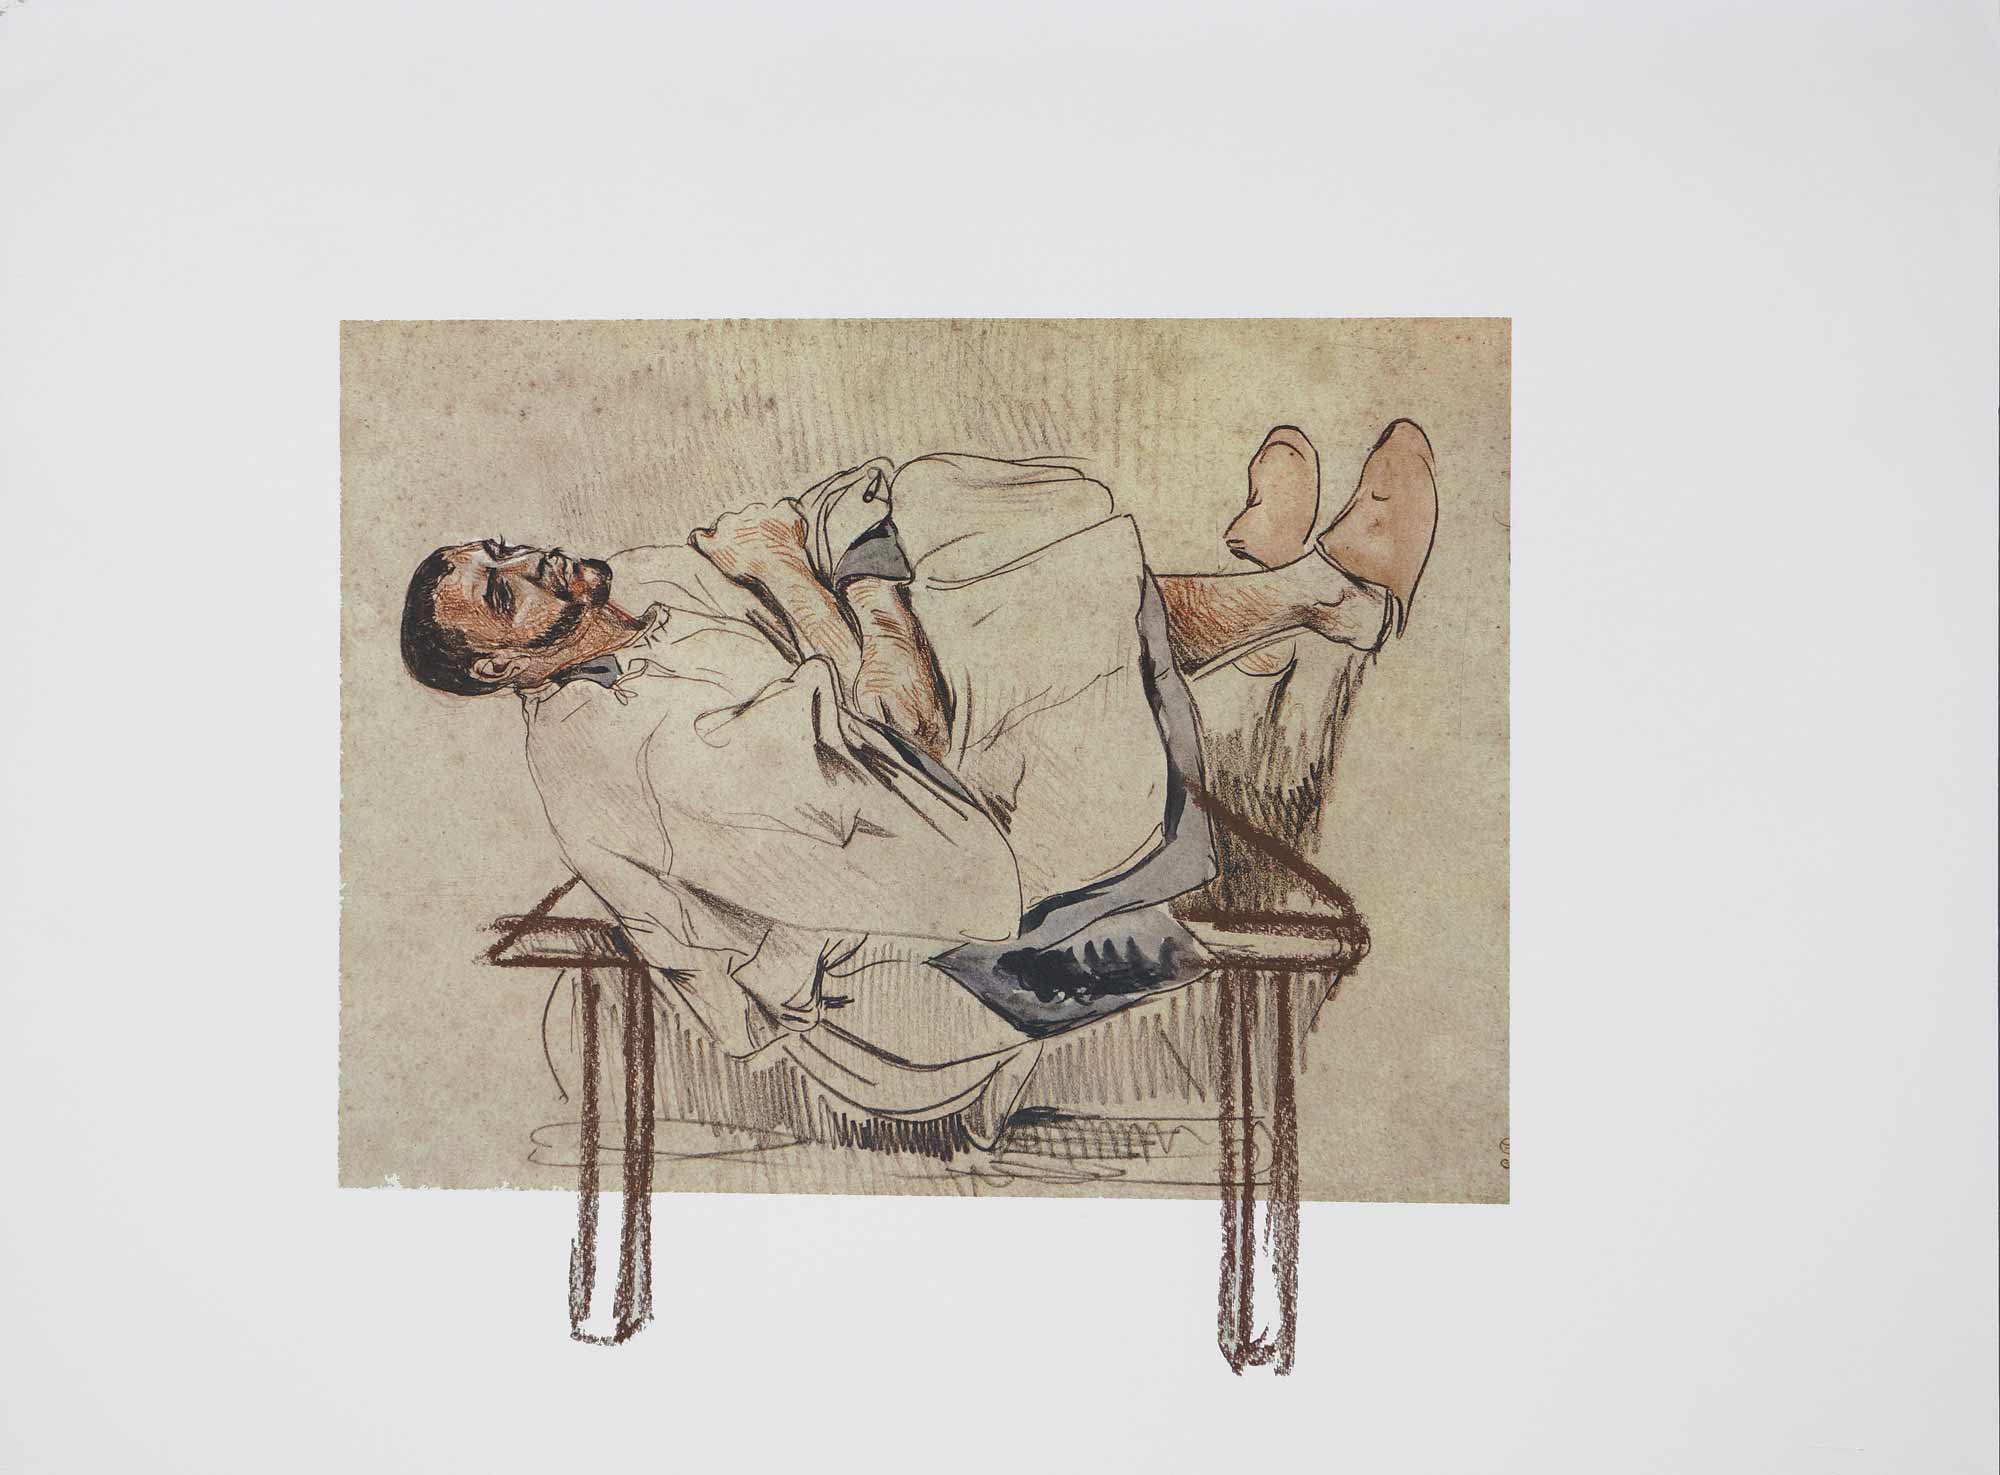 Dessin sur dessin - 2013 – Sanguine. 50 x 40 cm. Denis Falgoux